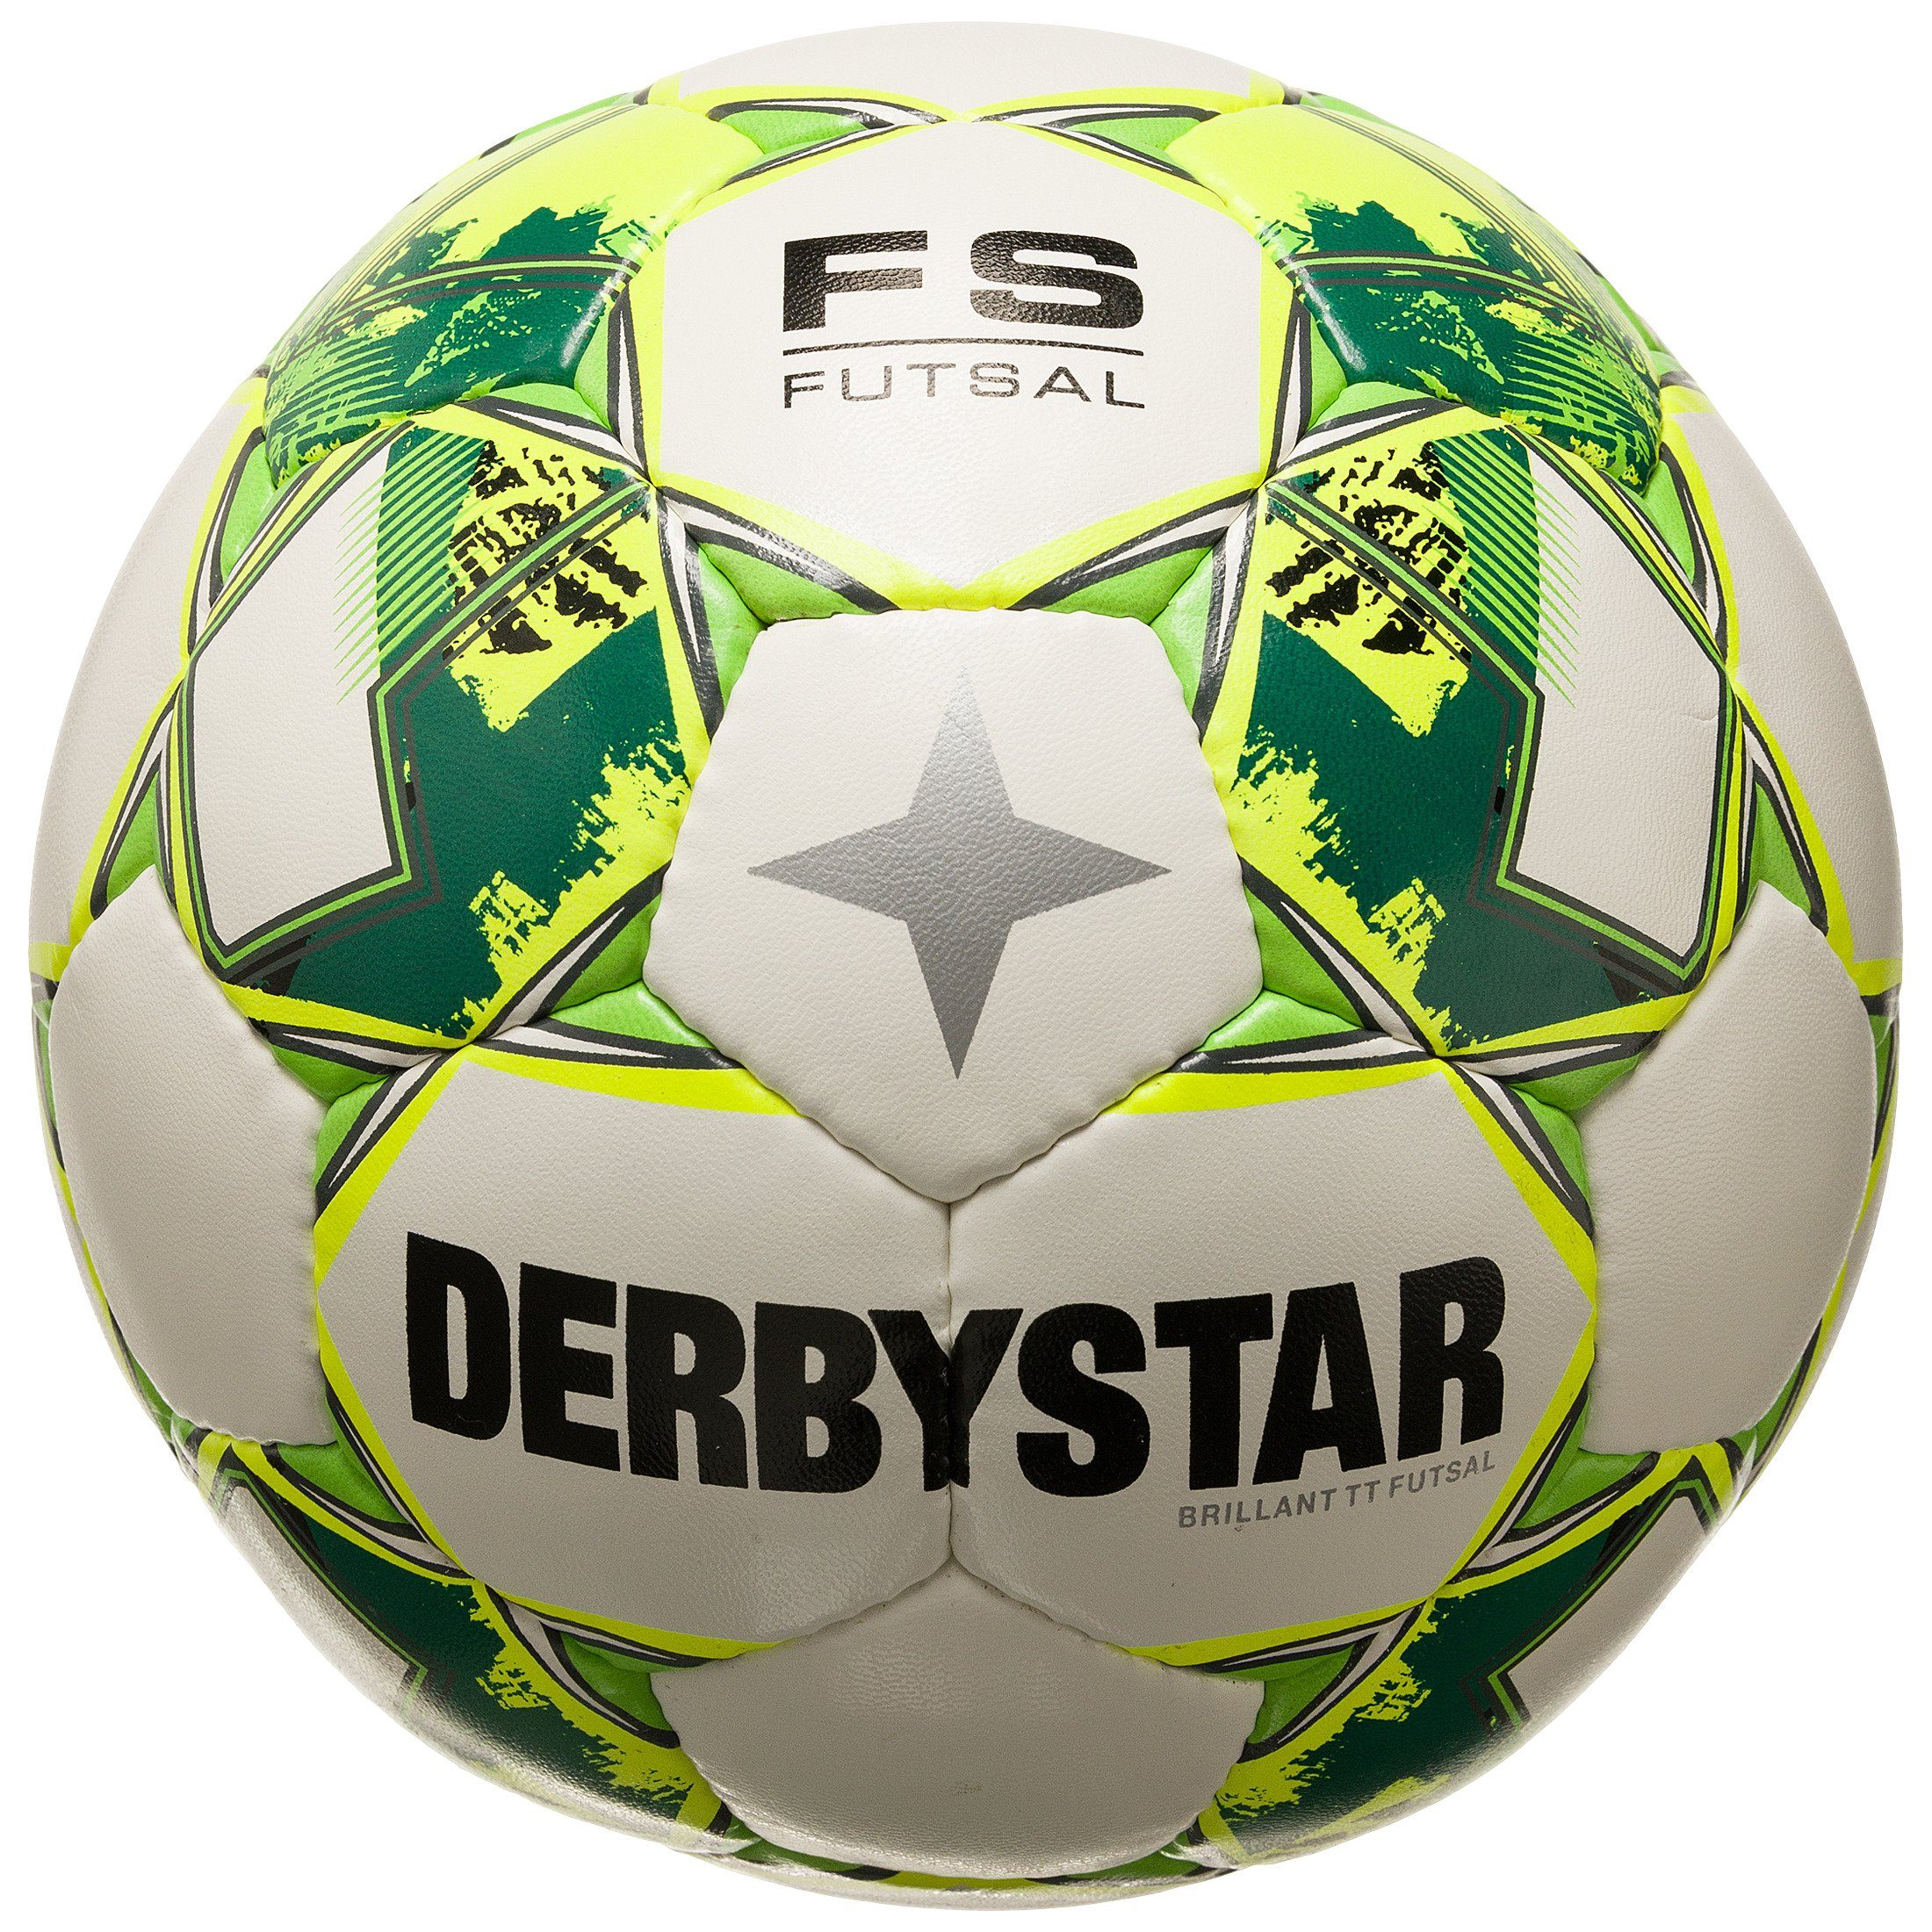 v23 Fußball, Brillant High-Visibility-Farben Derbystar für Fußball TT Sichtbarkeit